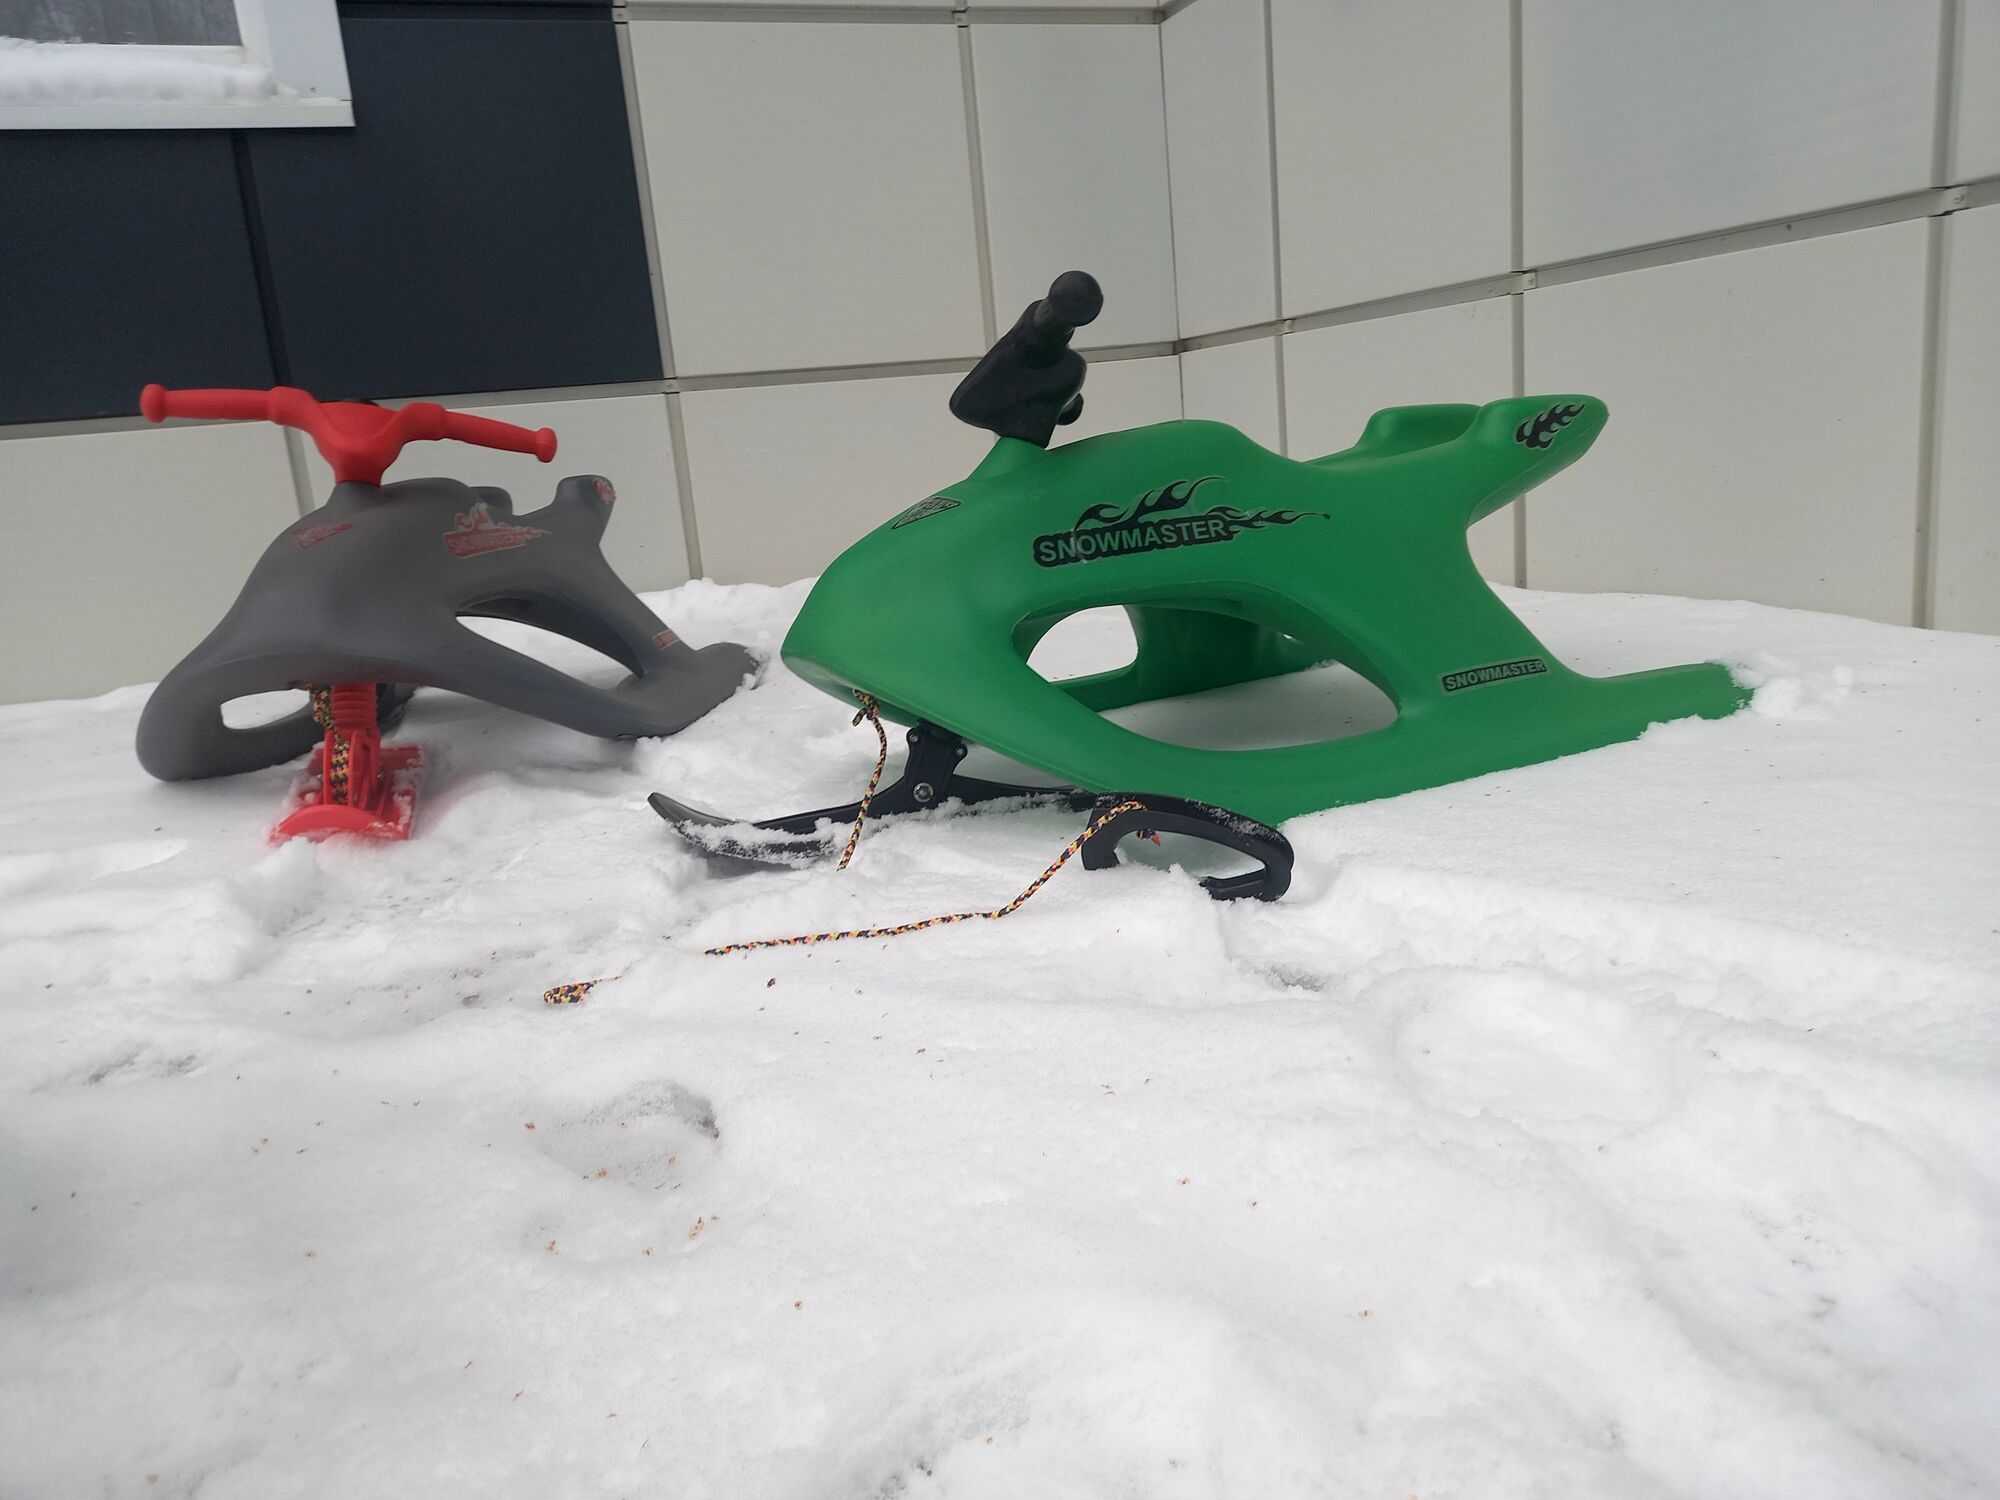 Снегоход детский 50cc с гусеницей Компакт - Мотор и Колесо - интернет-магазин, доставка РФ